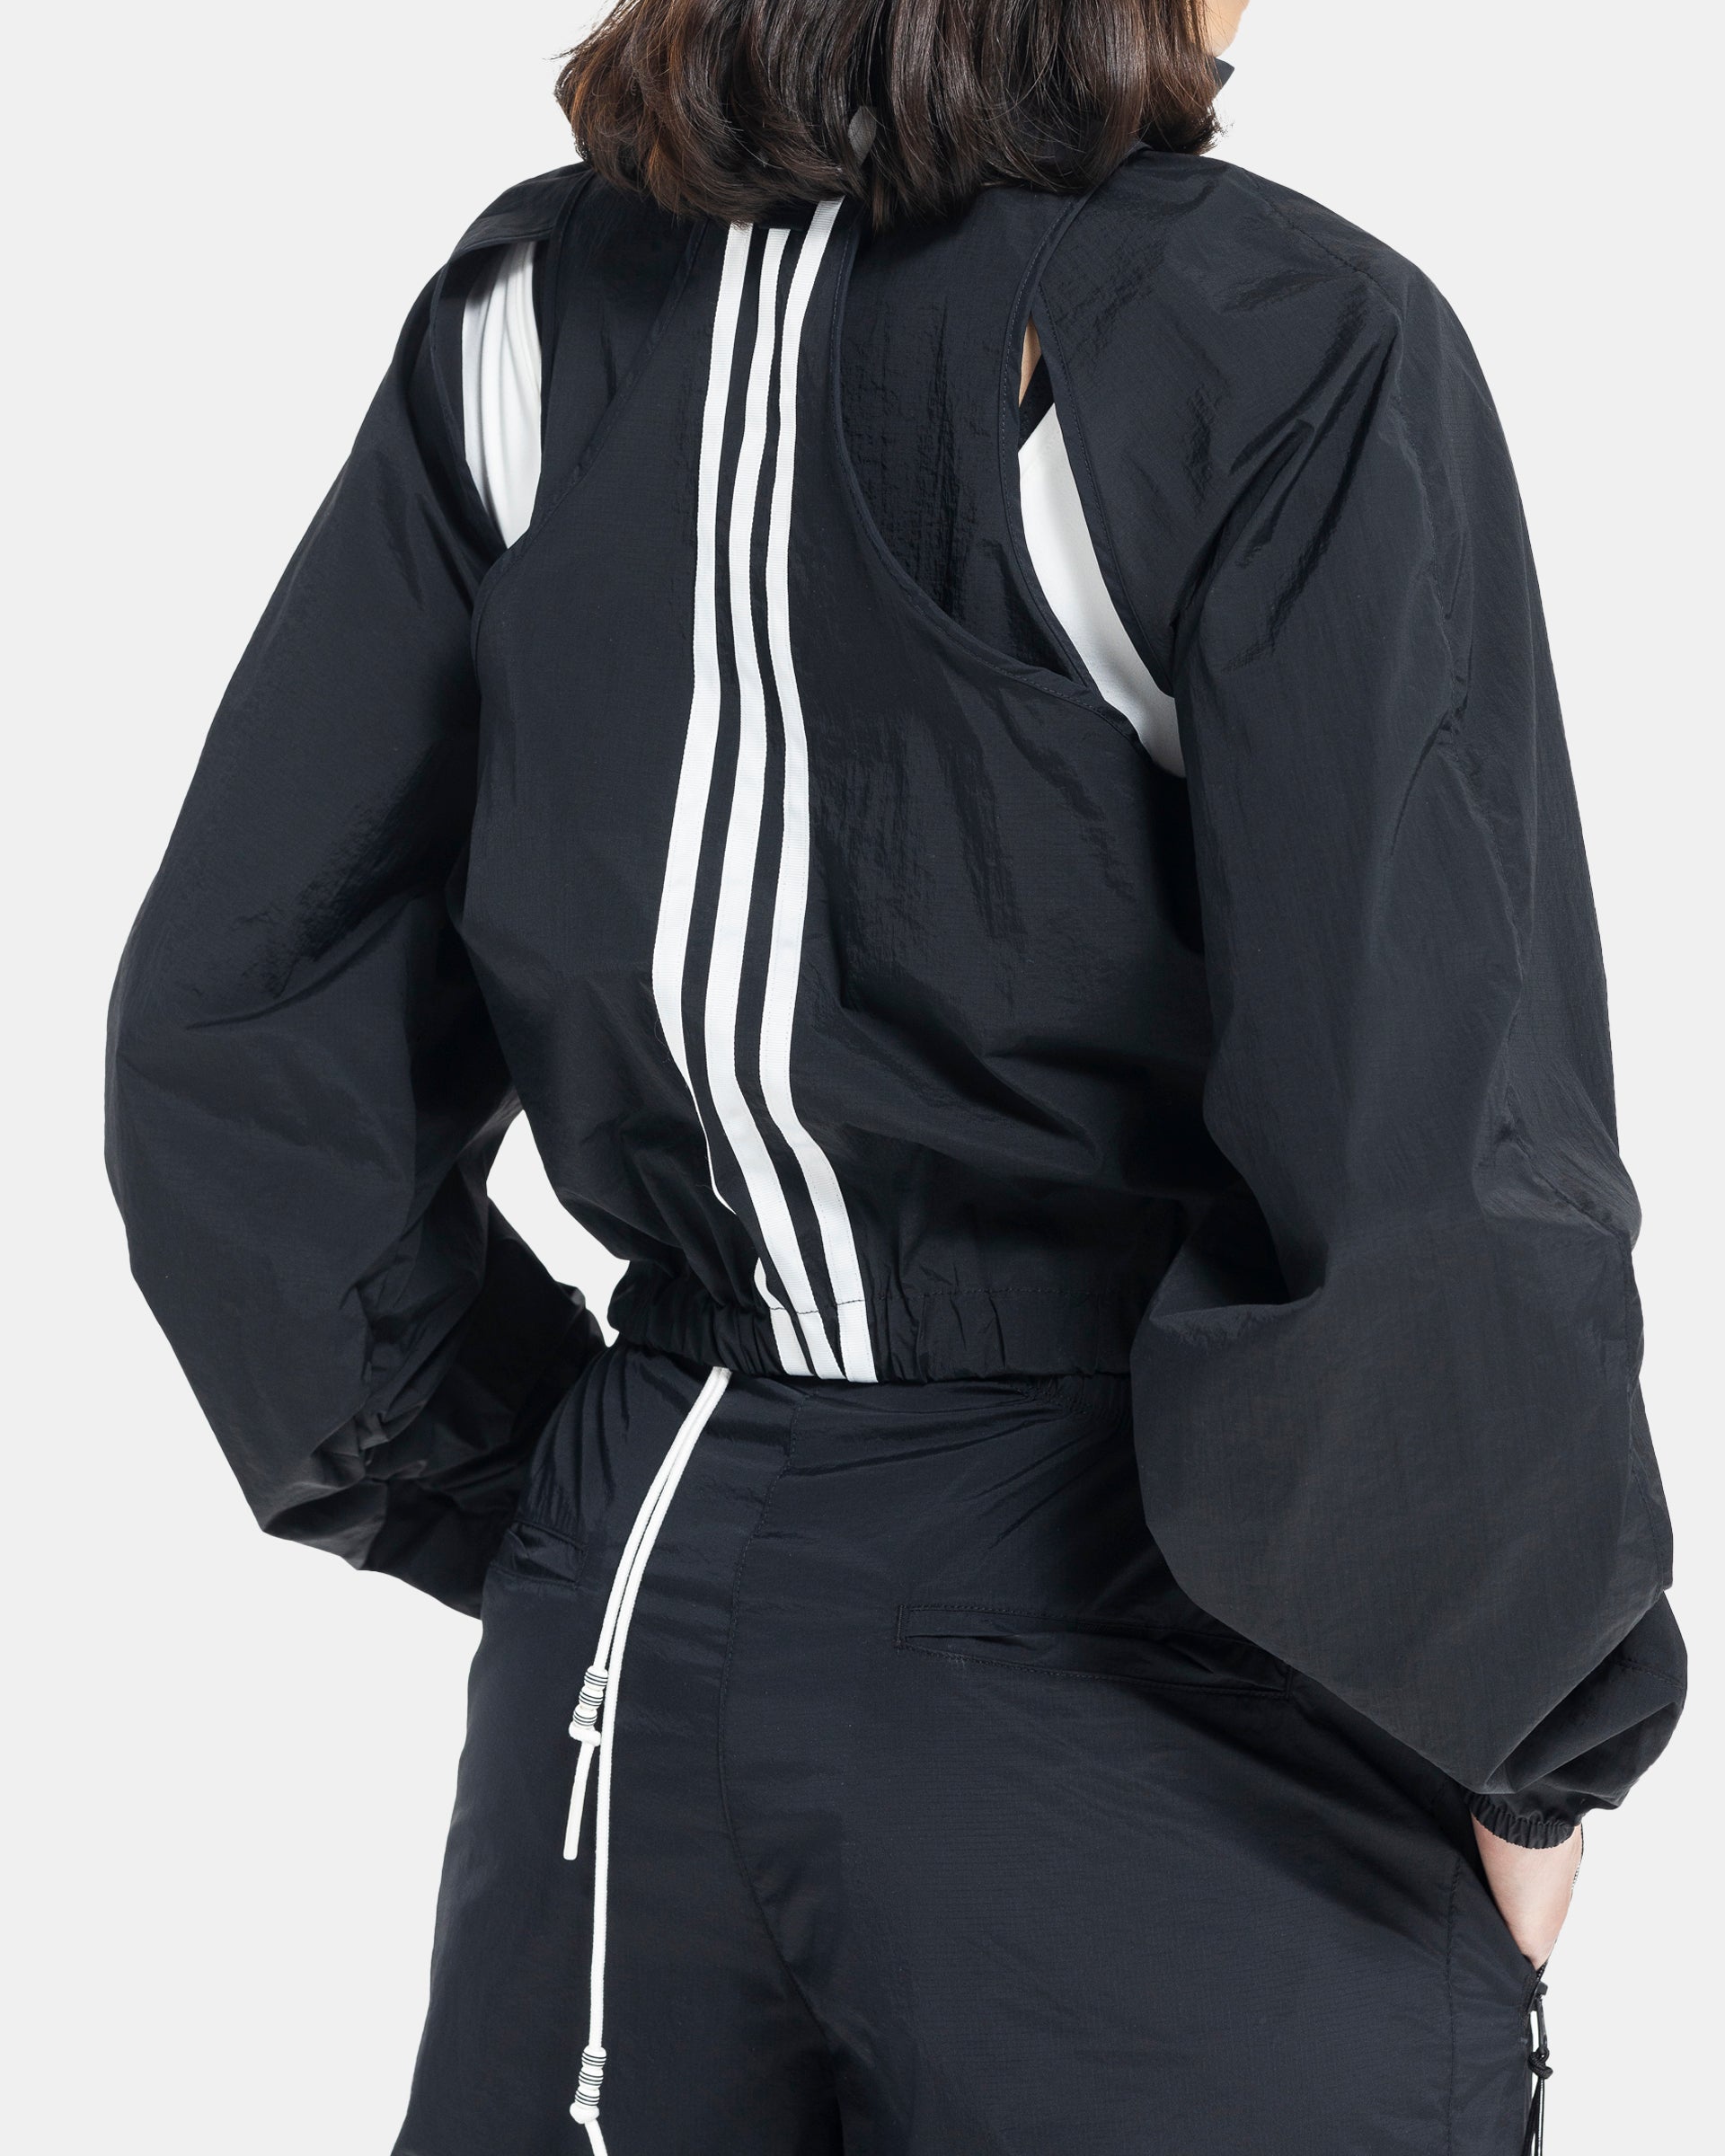 Female model wearing RUI x Adidas Black Jacket on white background